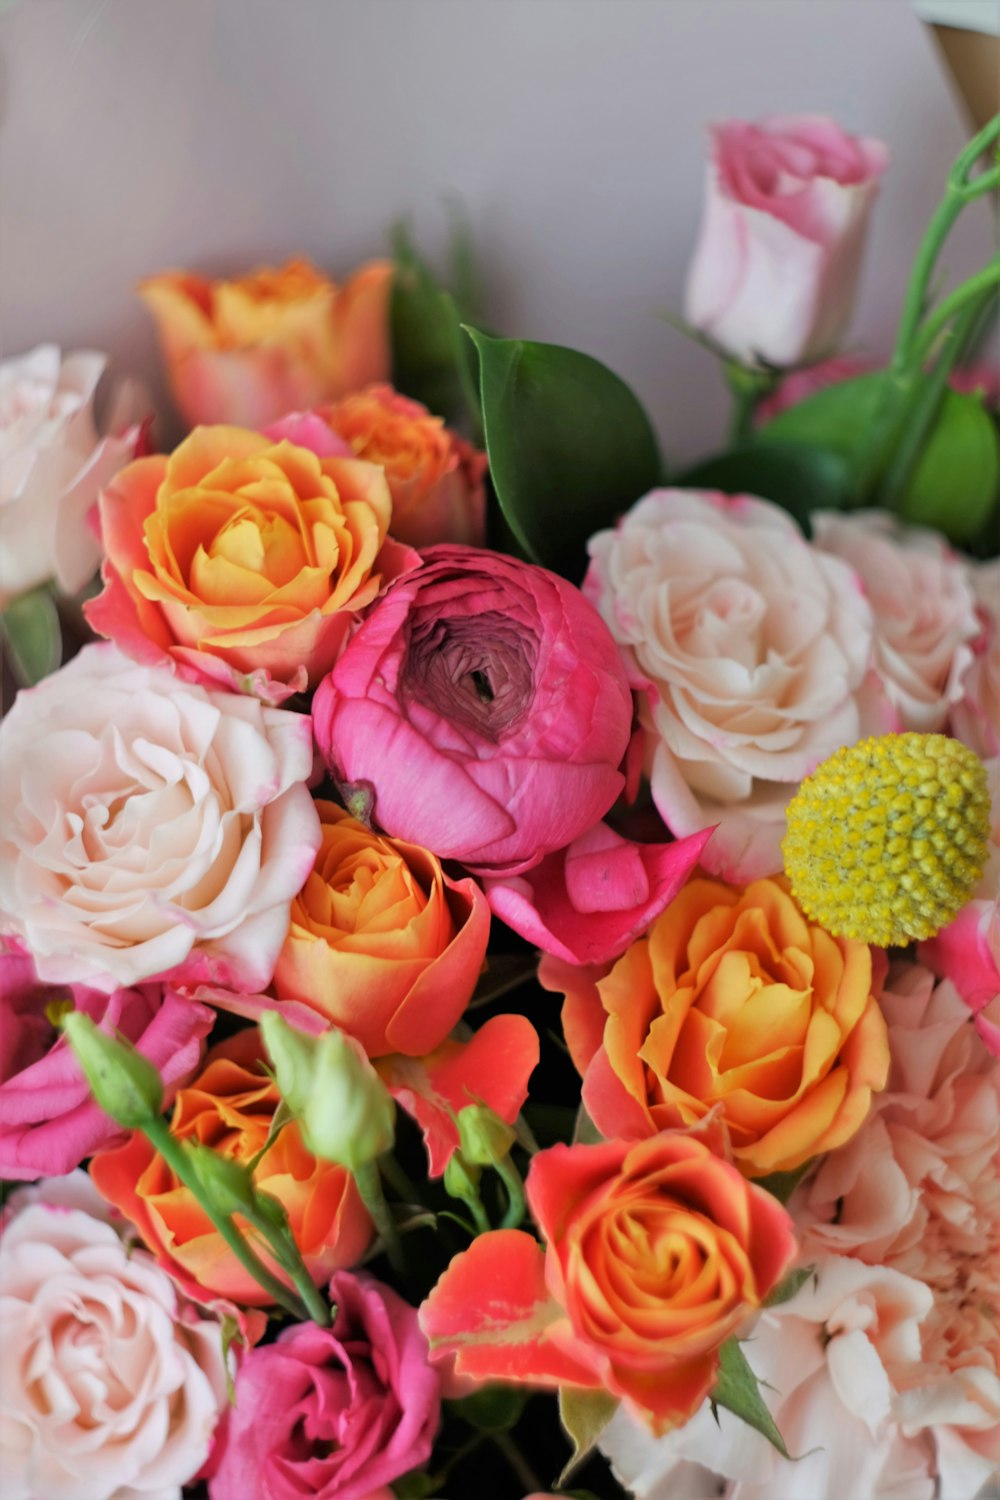 흰색 세라믹 꽃병에 분홍색과 노란색 장미